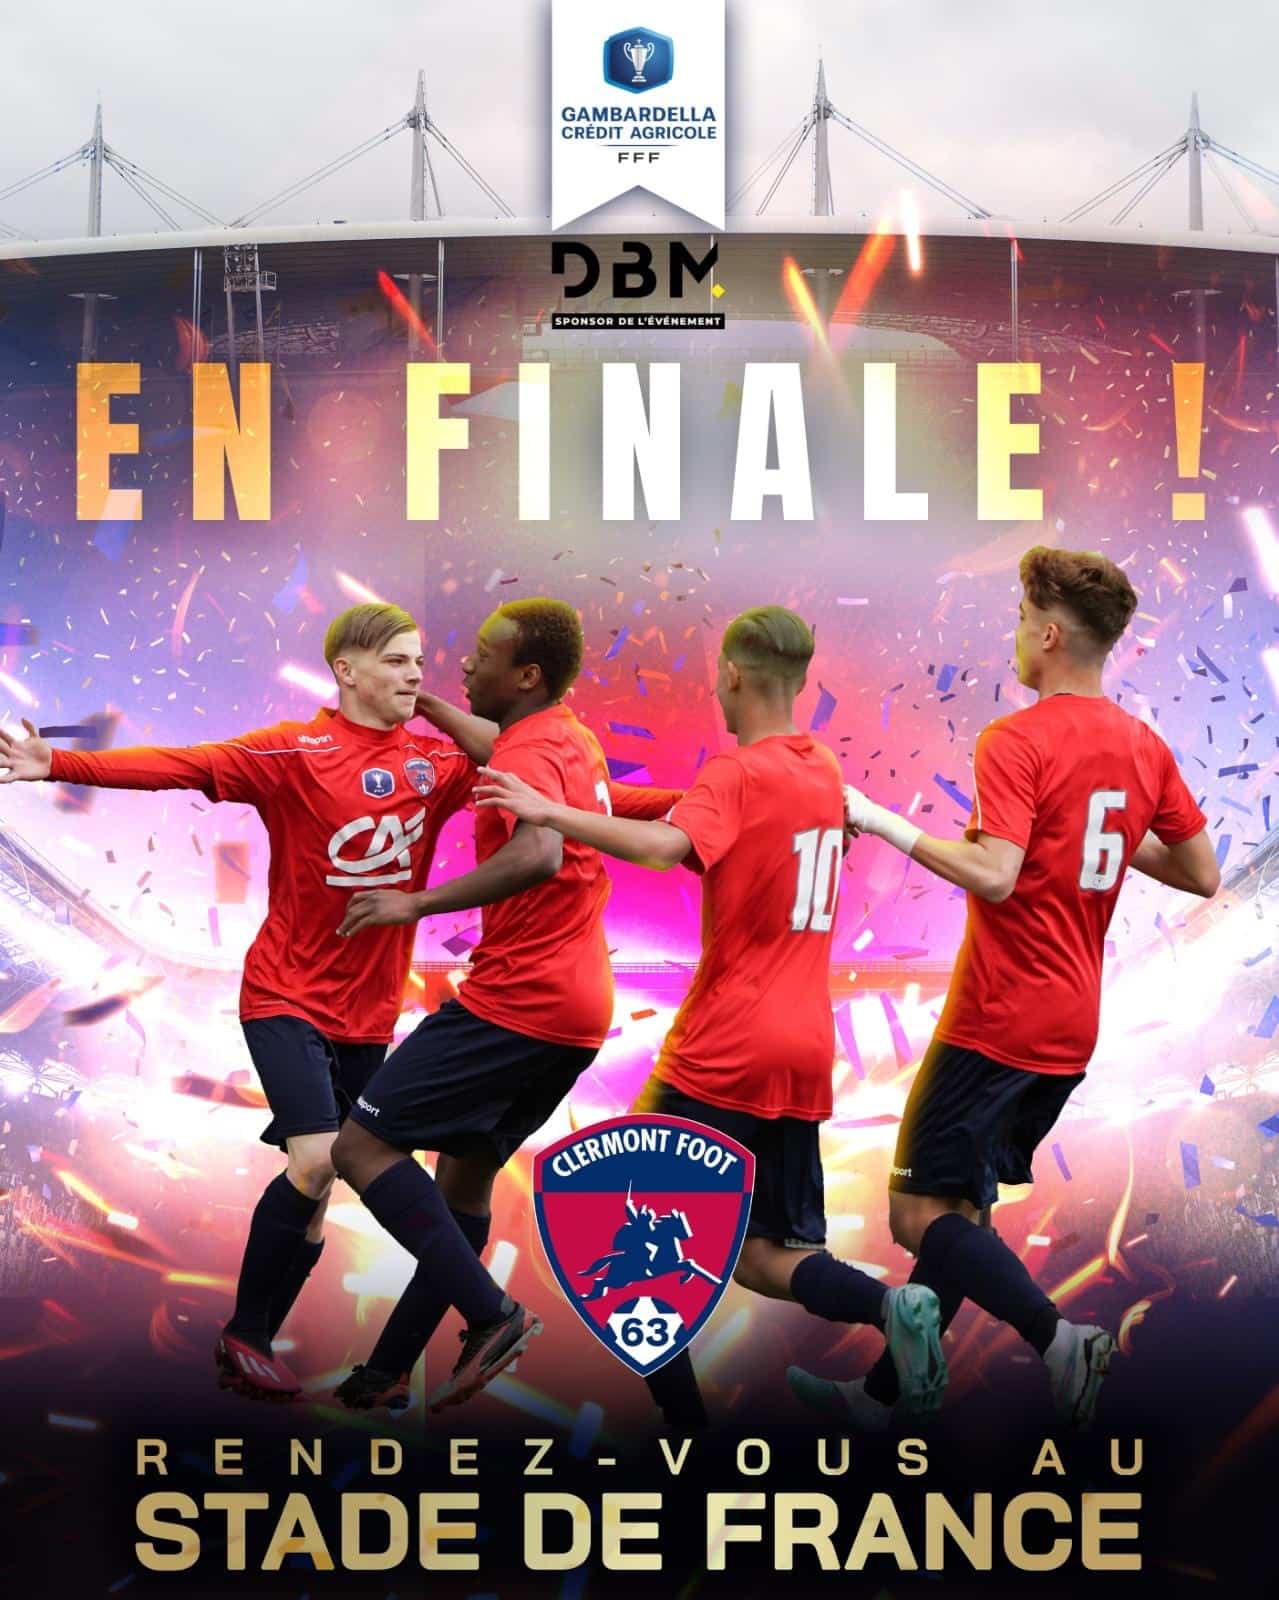 Exploit historique pour les U19 du Clermont foot en finale de la coupe Gambardella.